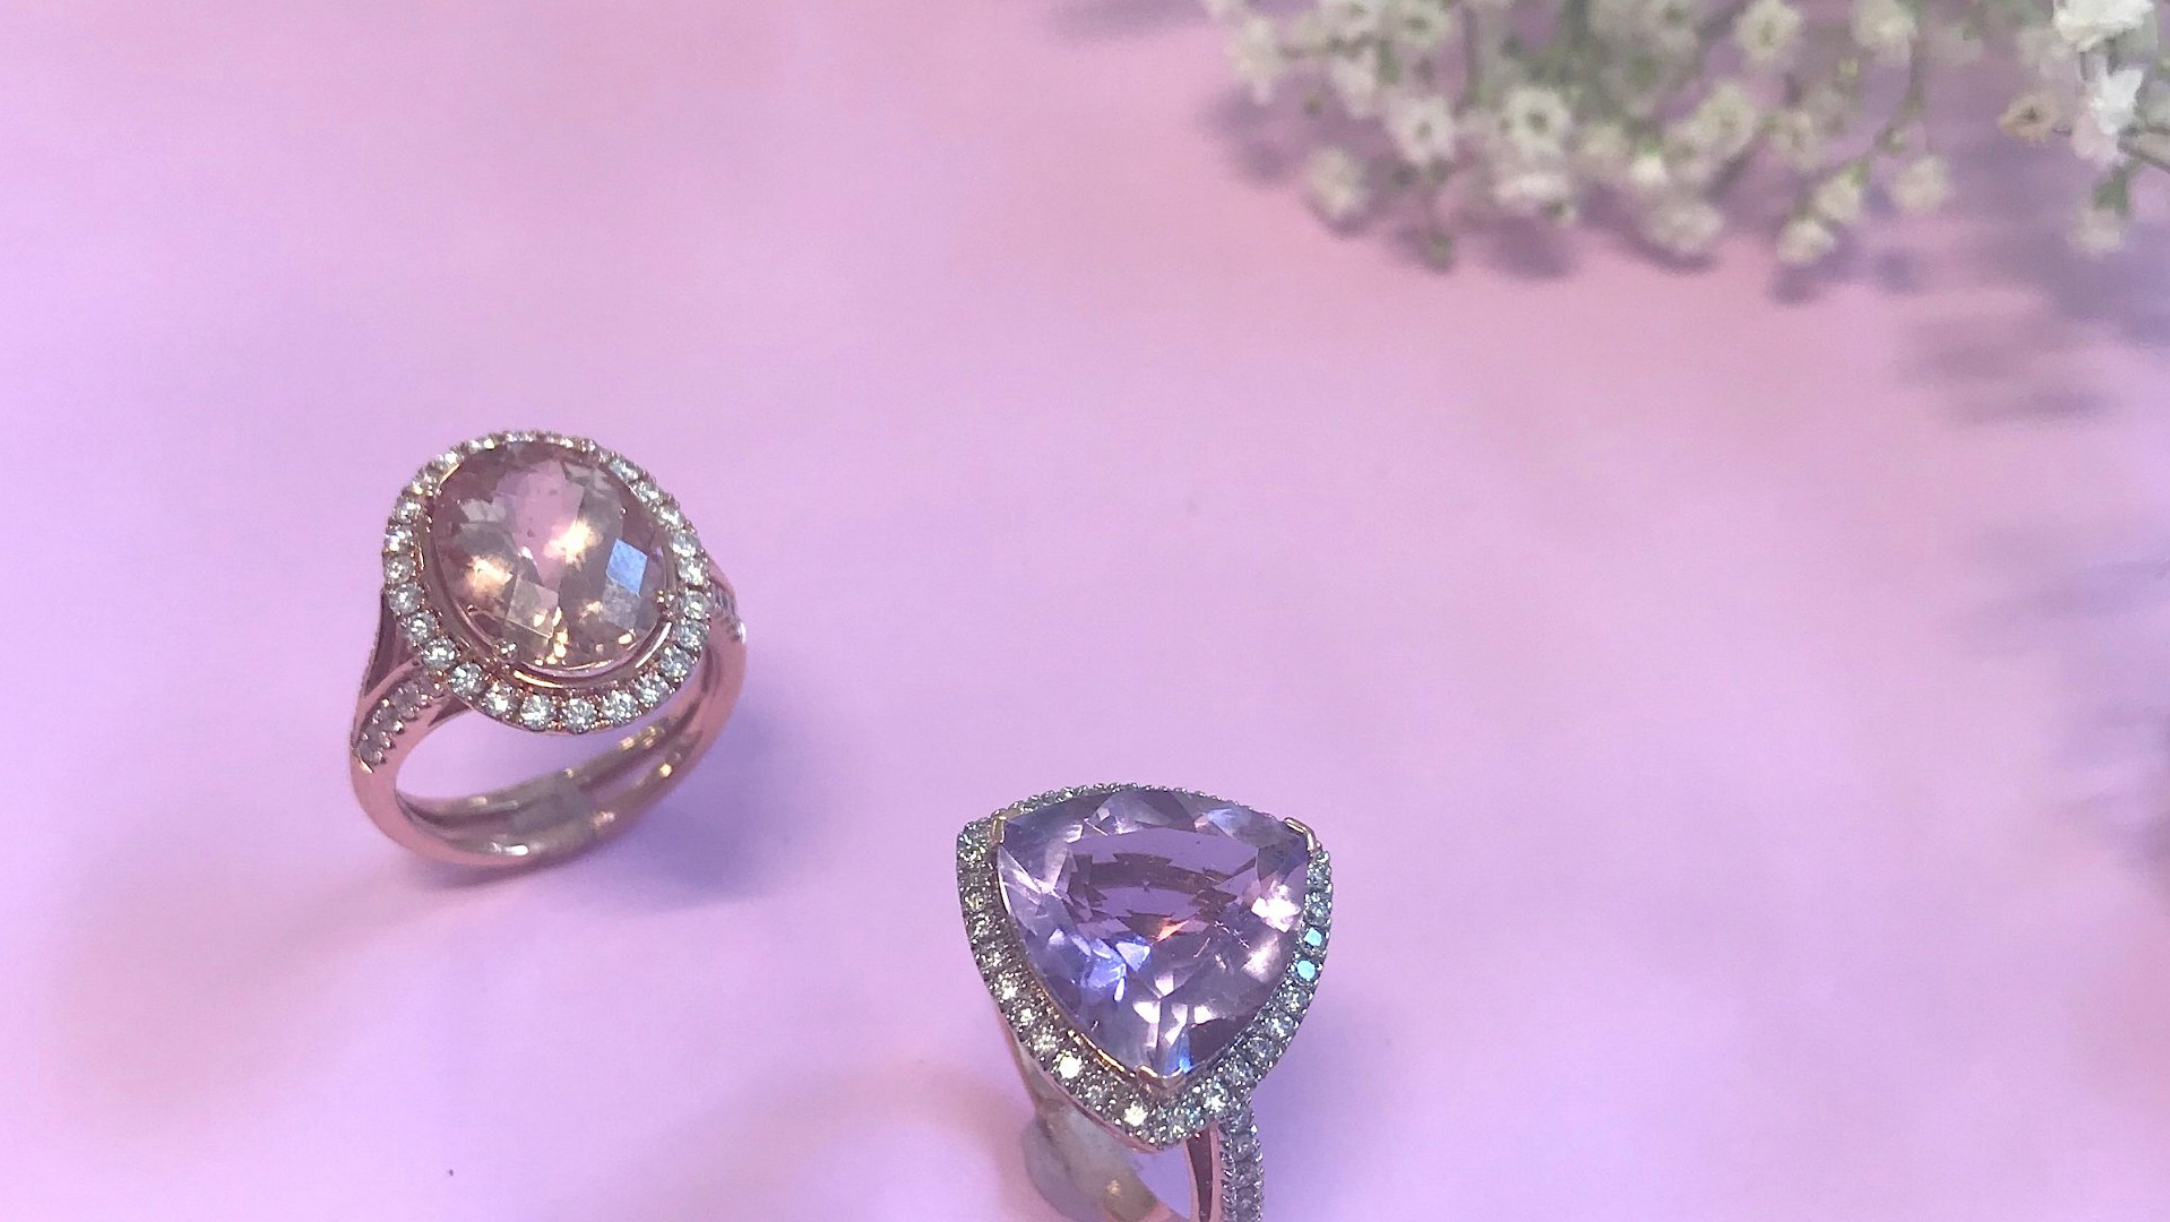 How To Buy Gemstone Jewelry